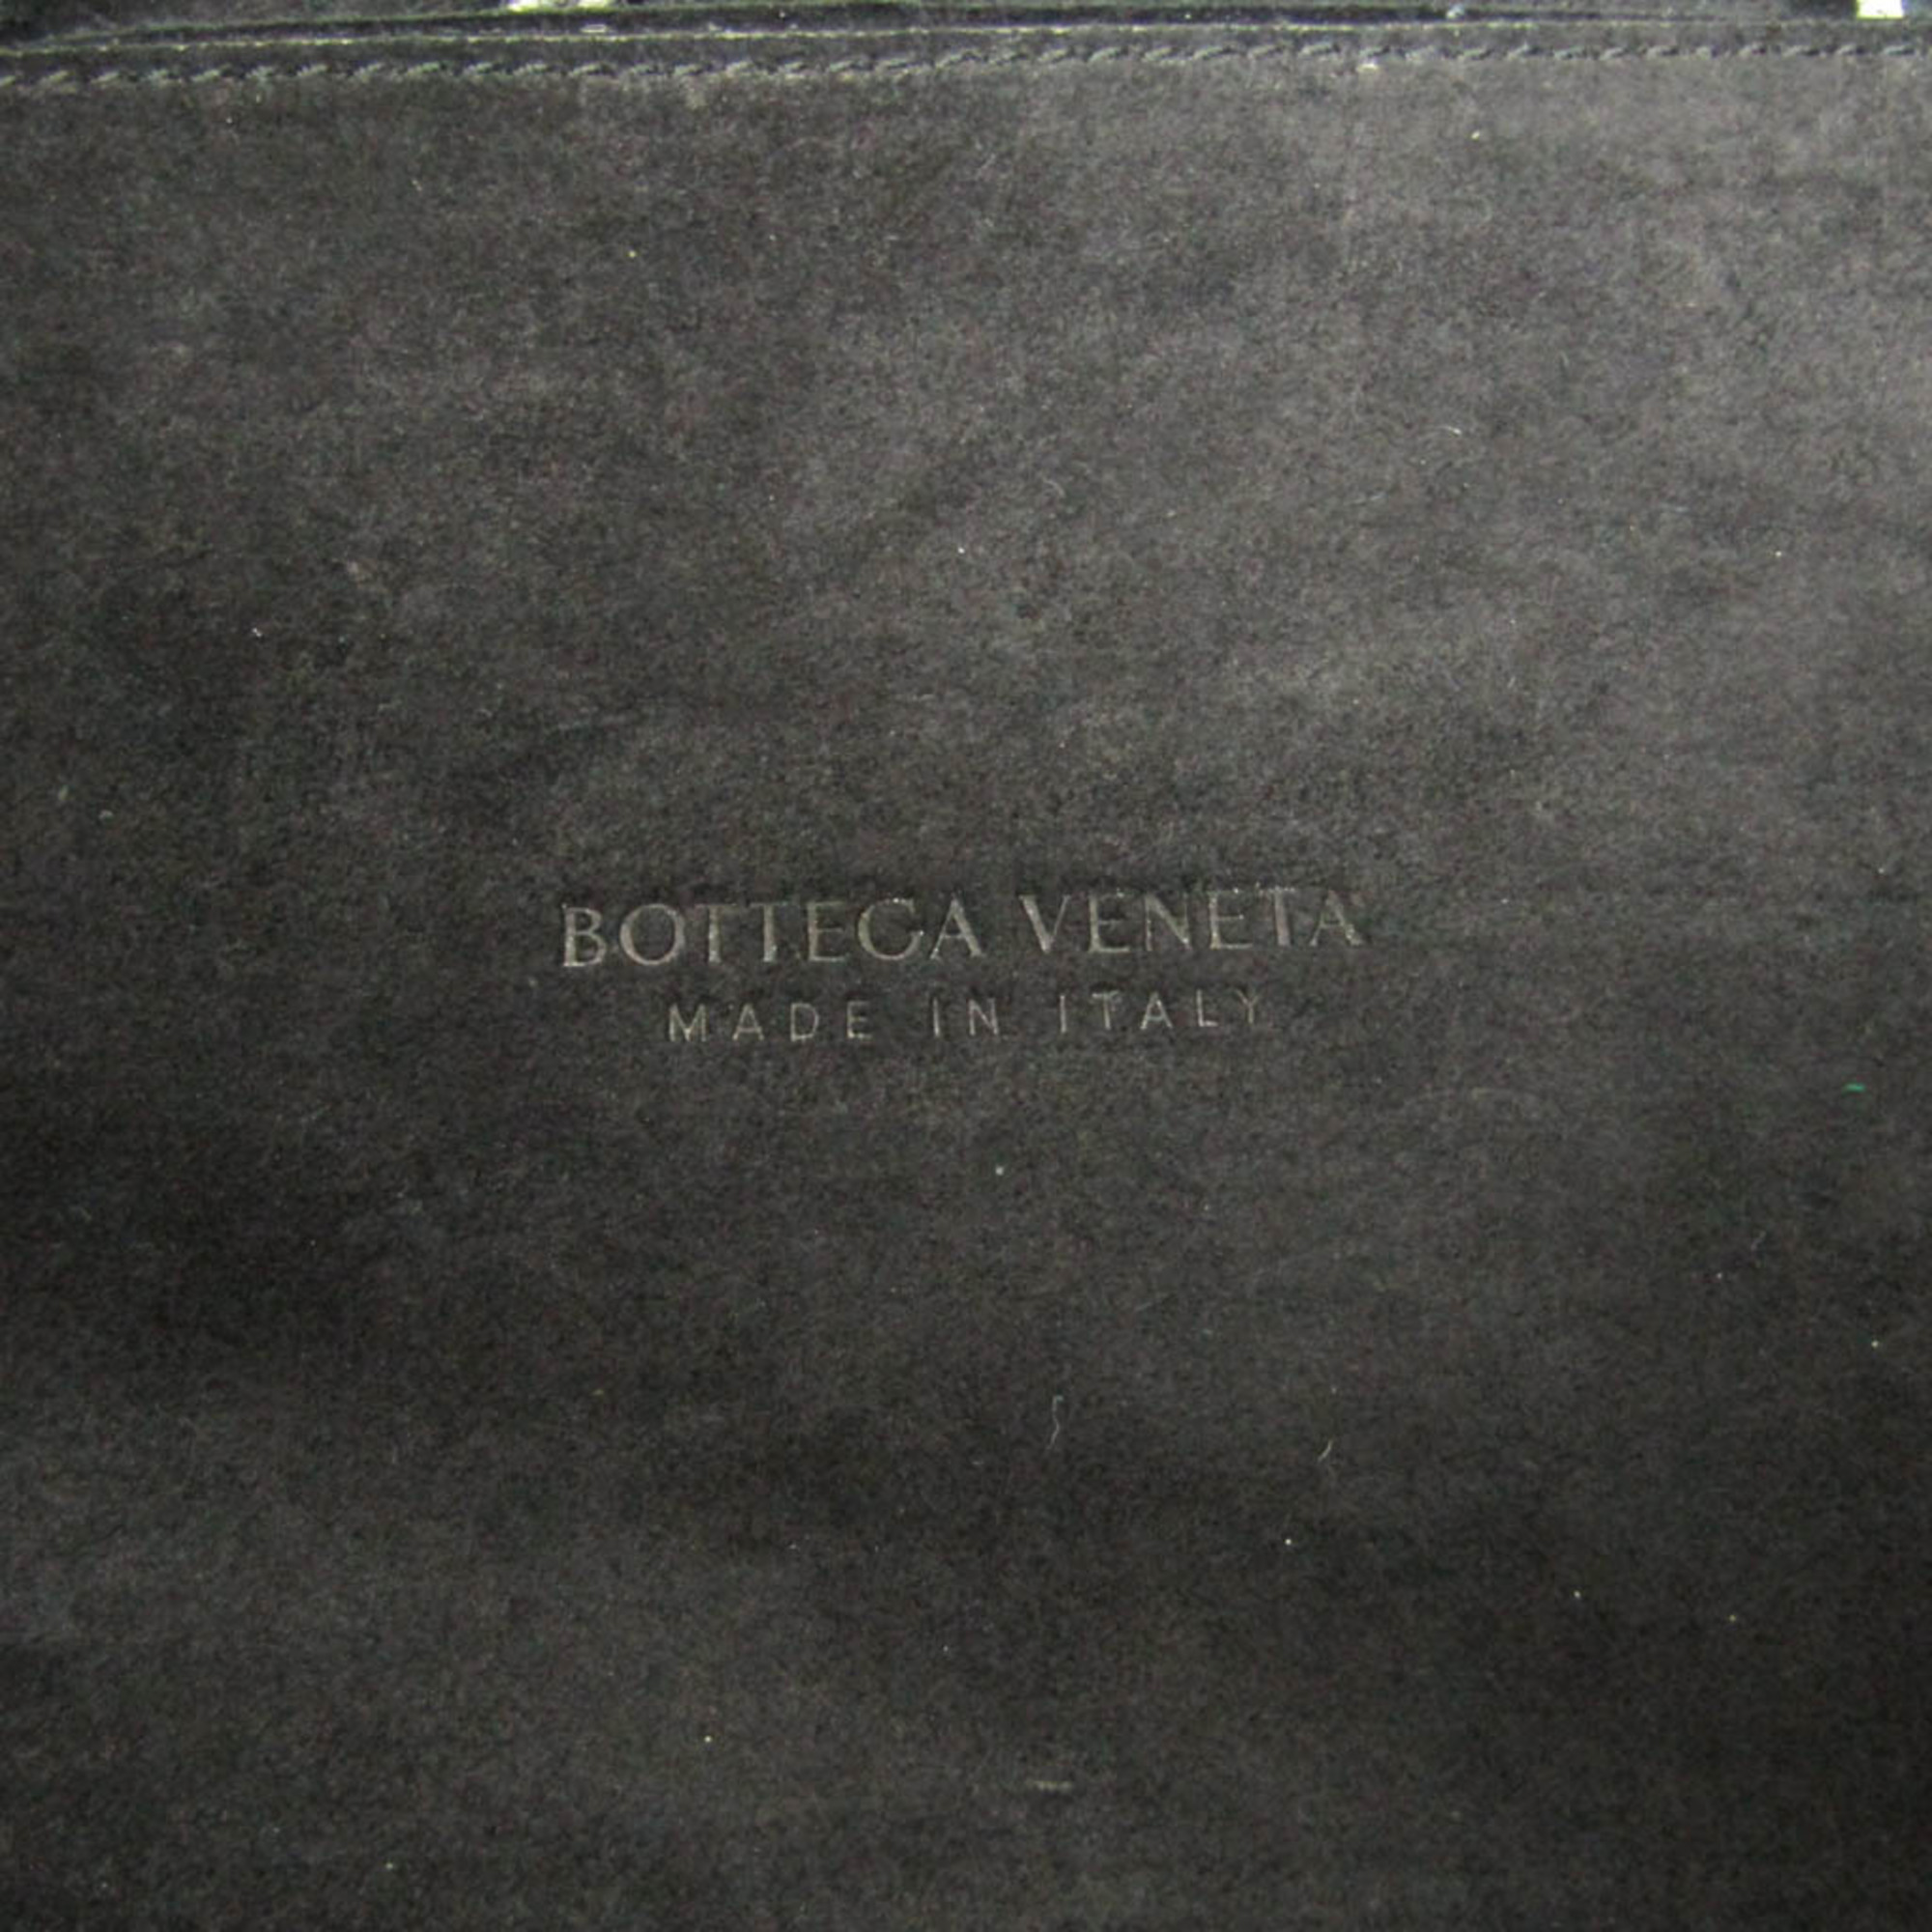 ボッテガ・ヴェネタ(Bottega Veneta) ミディアム アルコ 609175 レディース,メンズ レザー トートバッグ ブラック